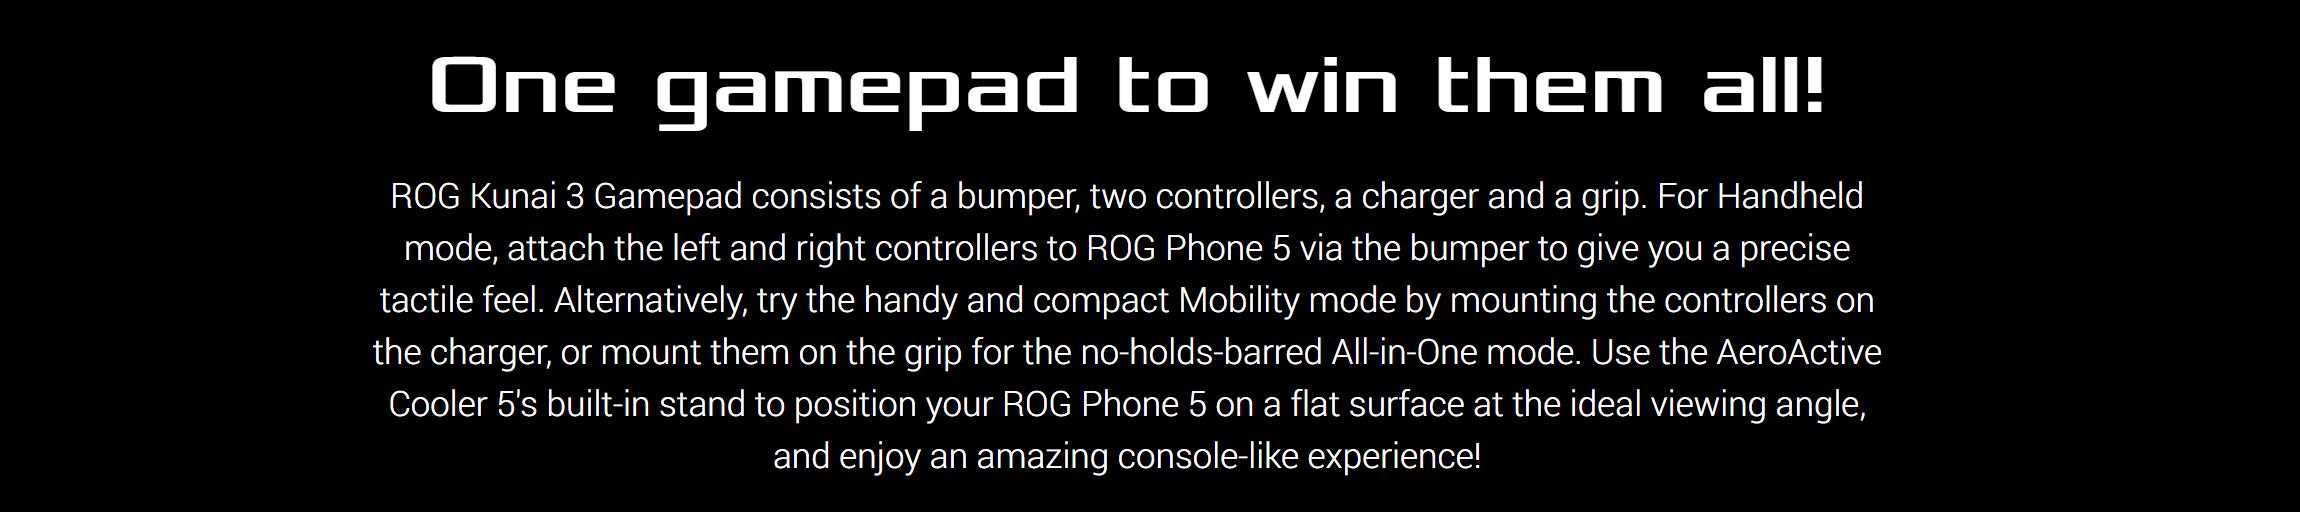 ASUS ROG Kunai 3 Gamepad For ROG Phone 5 3